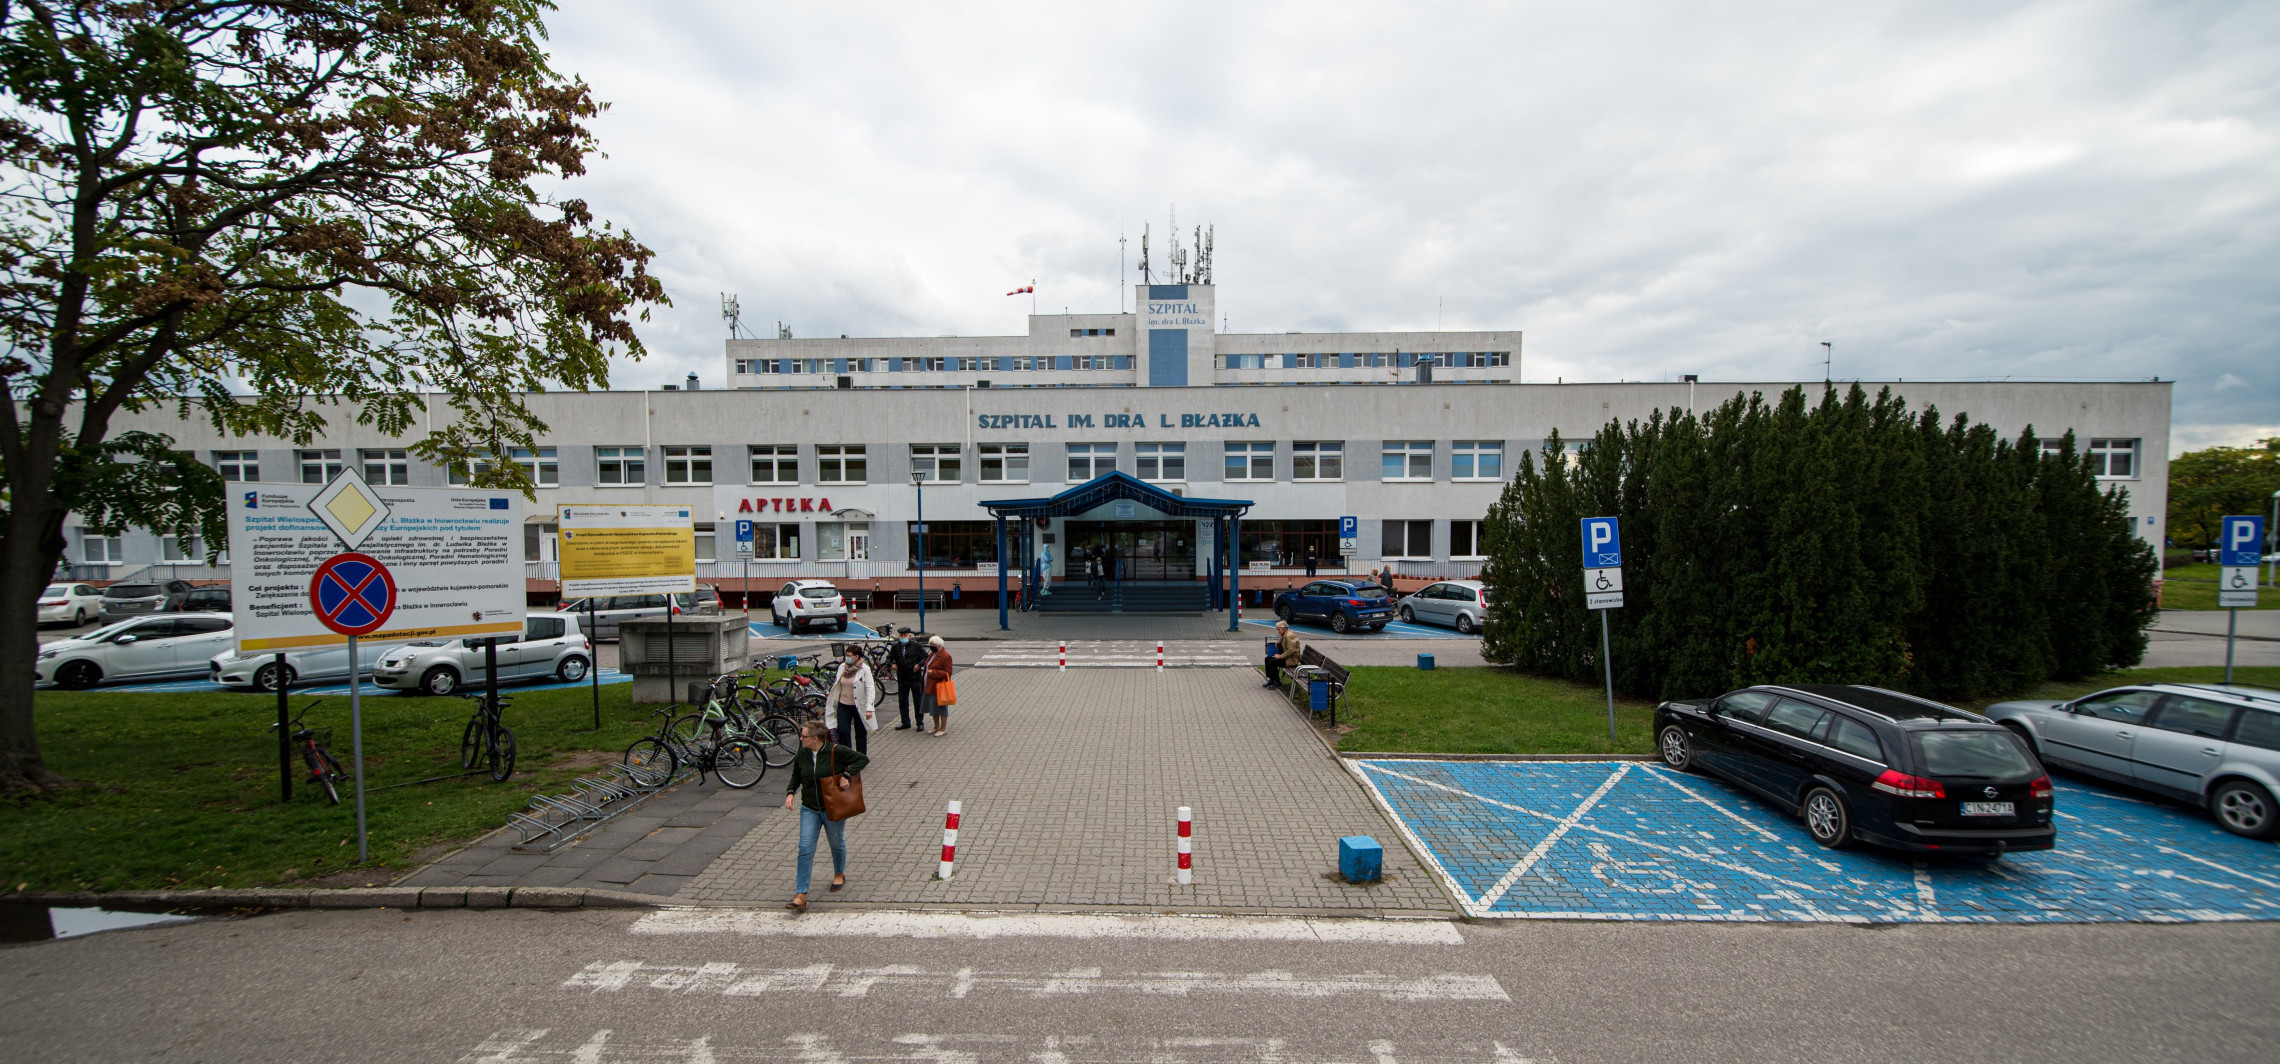 Inowrocław - Rehabilitacja po COVID-19 także w naszym szpitalu